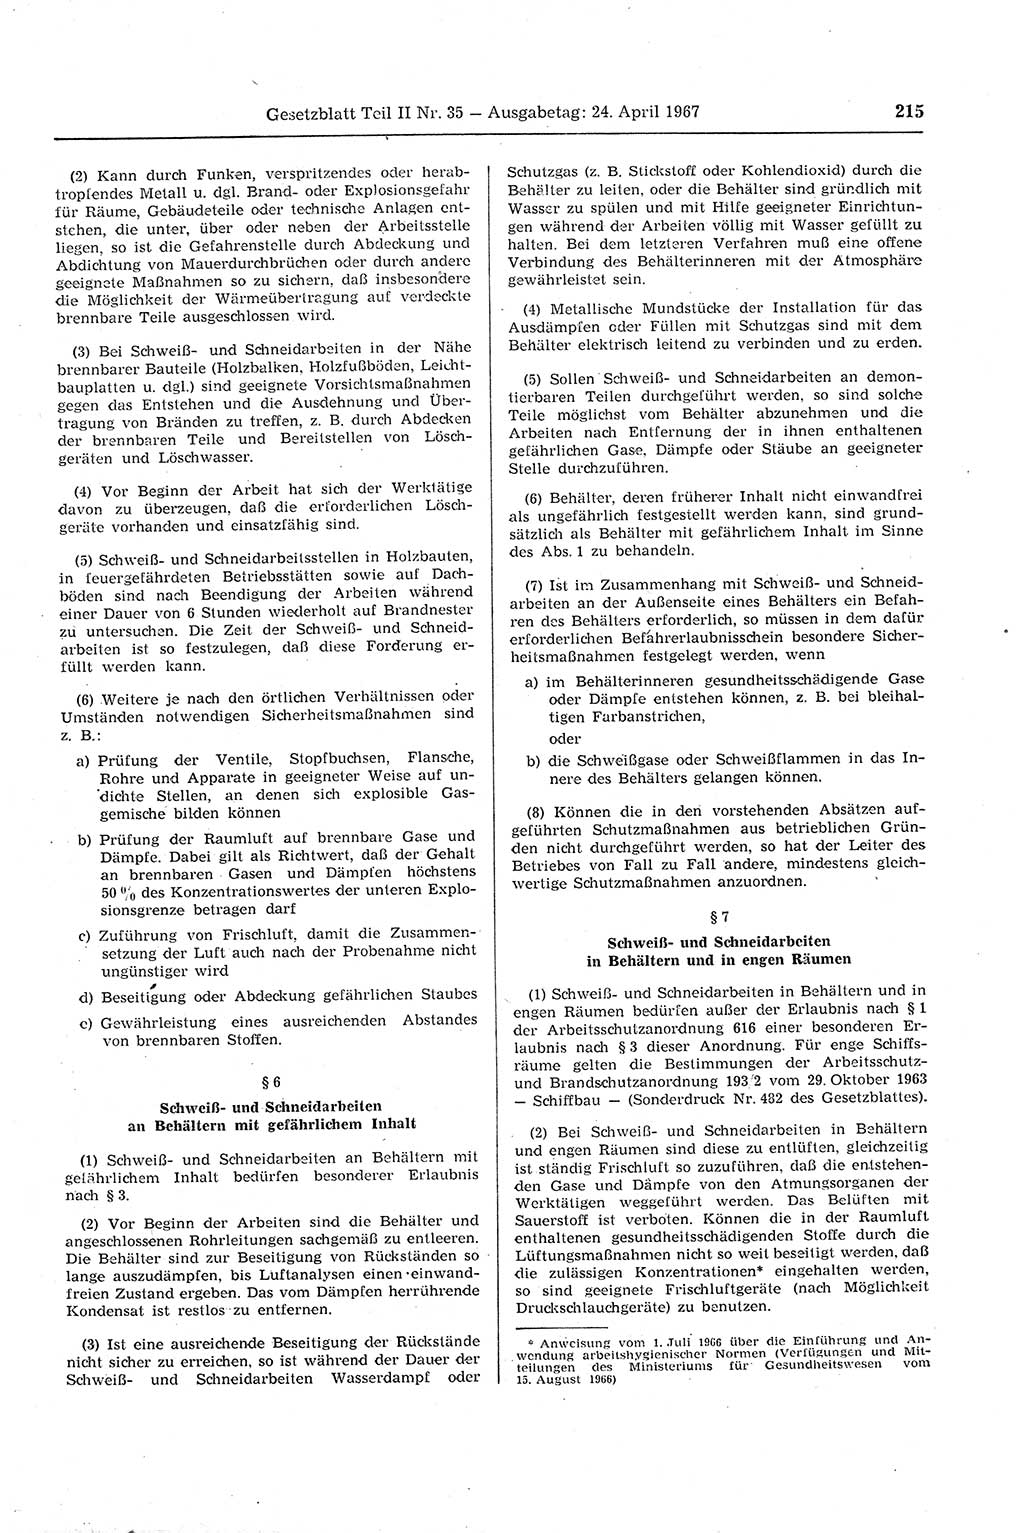 Gesetzblatt (GBl.) der Deutschen Demokratischen Republik (DDR) Teil ⅠⅠ 1967, Seite 215 (GBl. DDR ⅠⅠ 1967, S. 215)